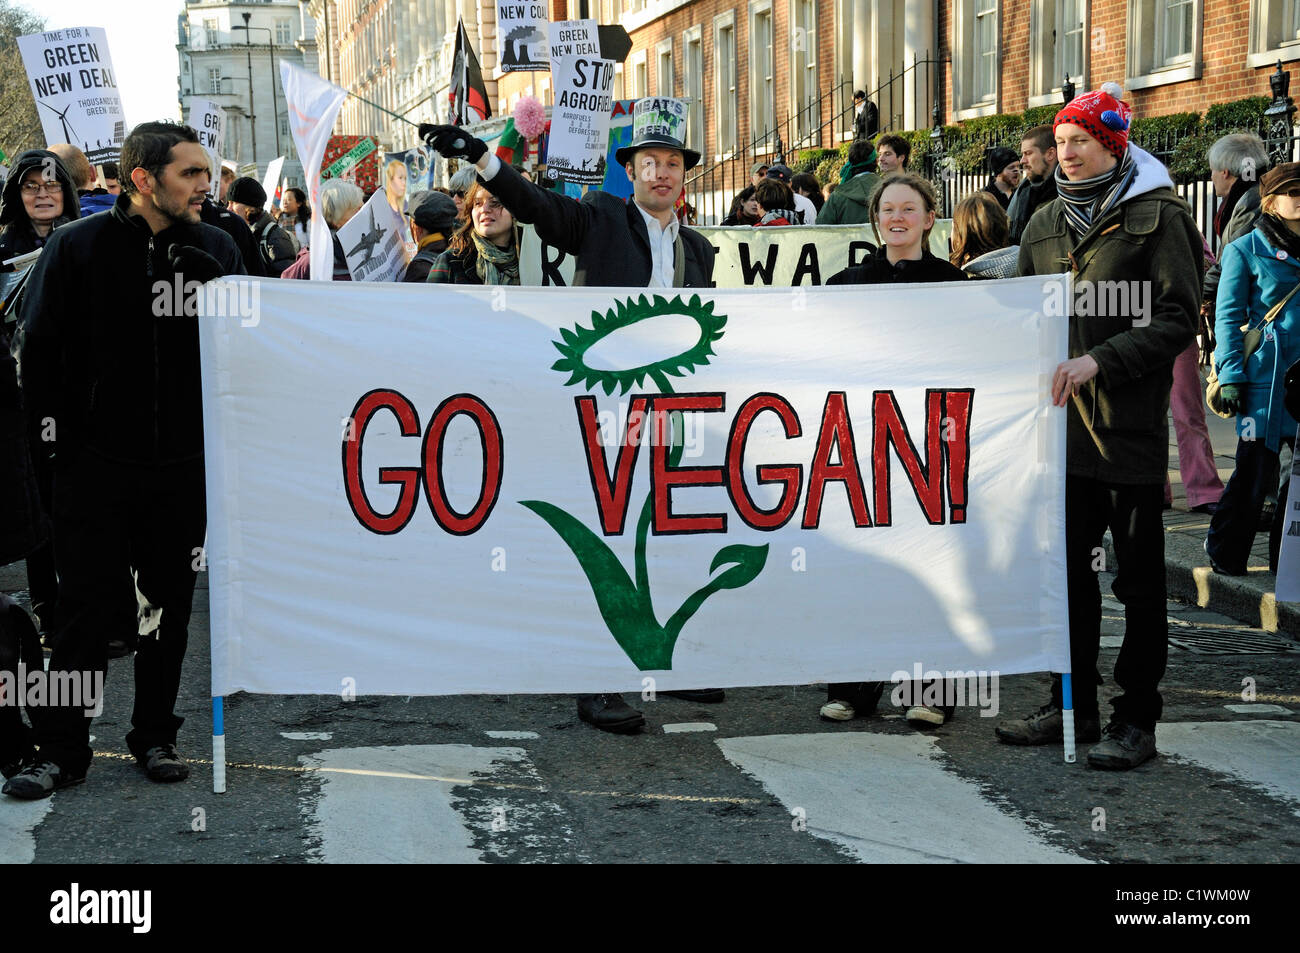 Go Vega bannière à la Climate change Mars Londres Angleterre Royaume-Uni vie durable, pas de viande. Banque D'Images